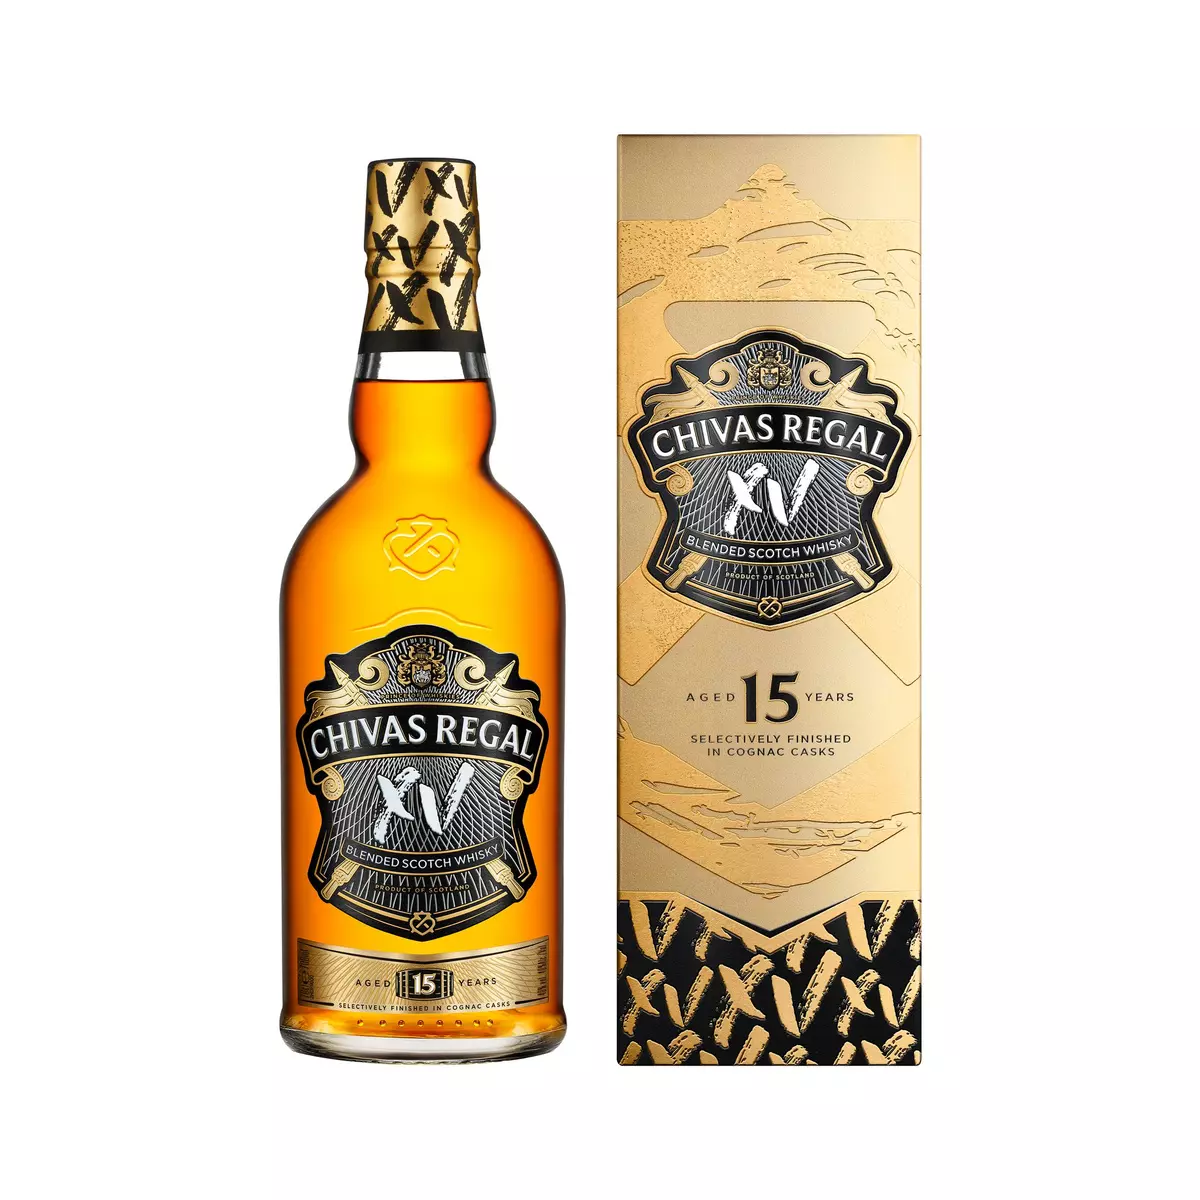 BALLANTINES Scotch whisky écossais blended malt 40% 70cl pas cher 